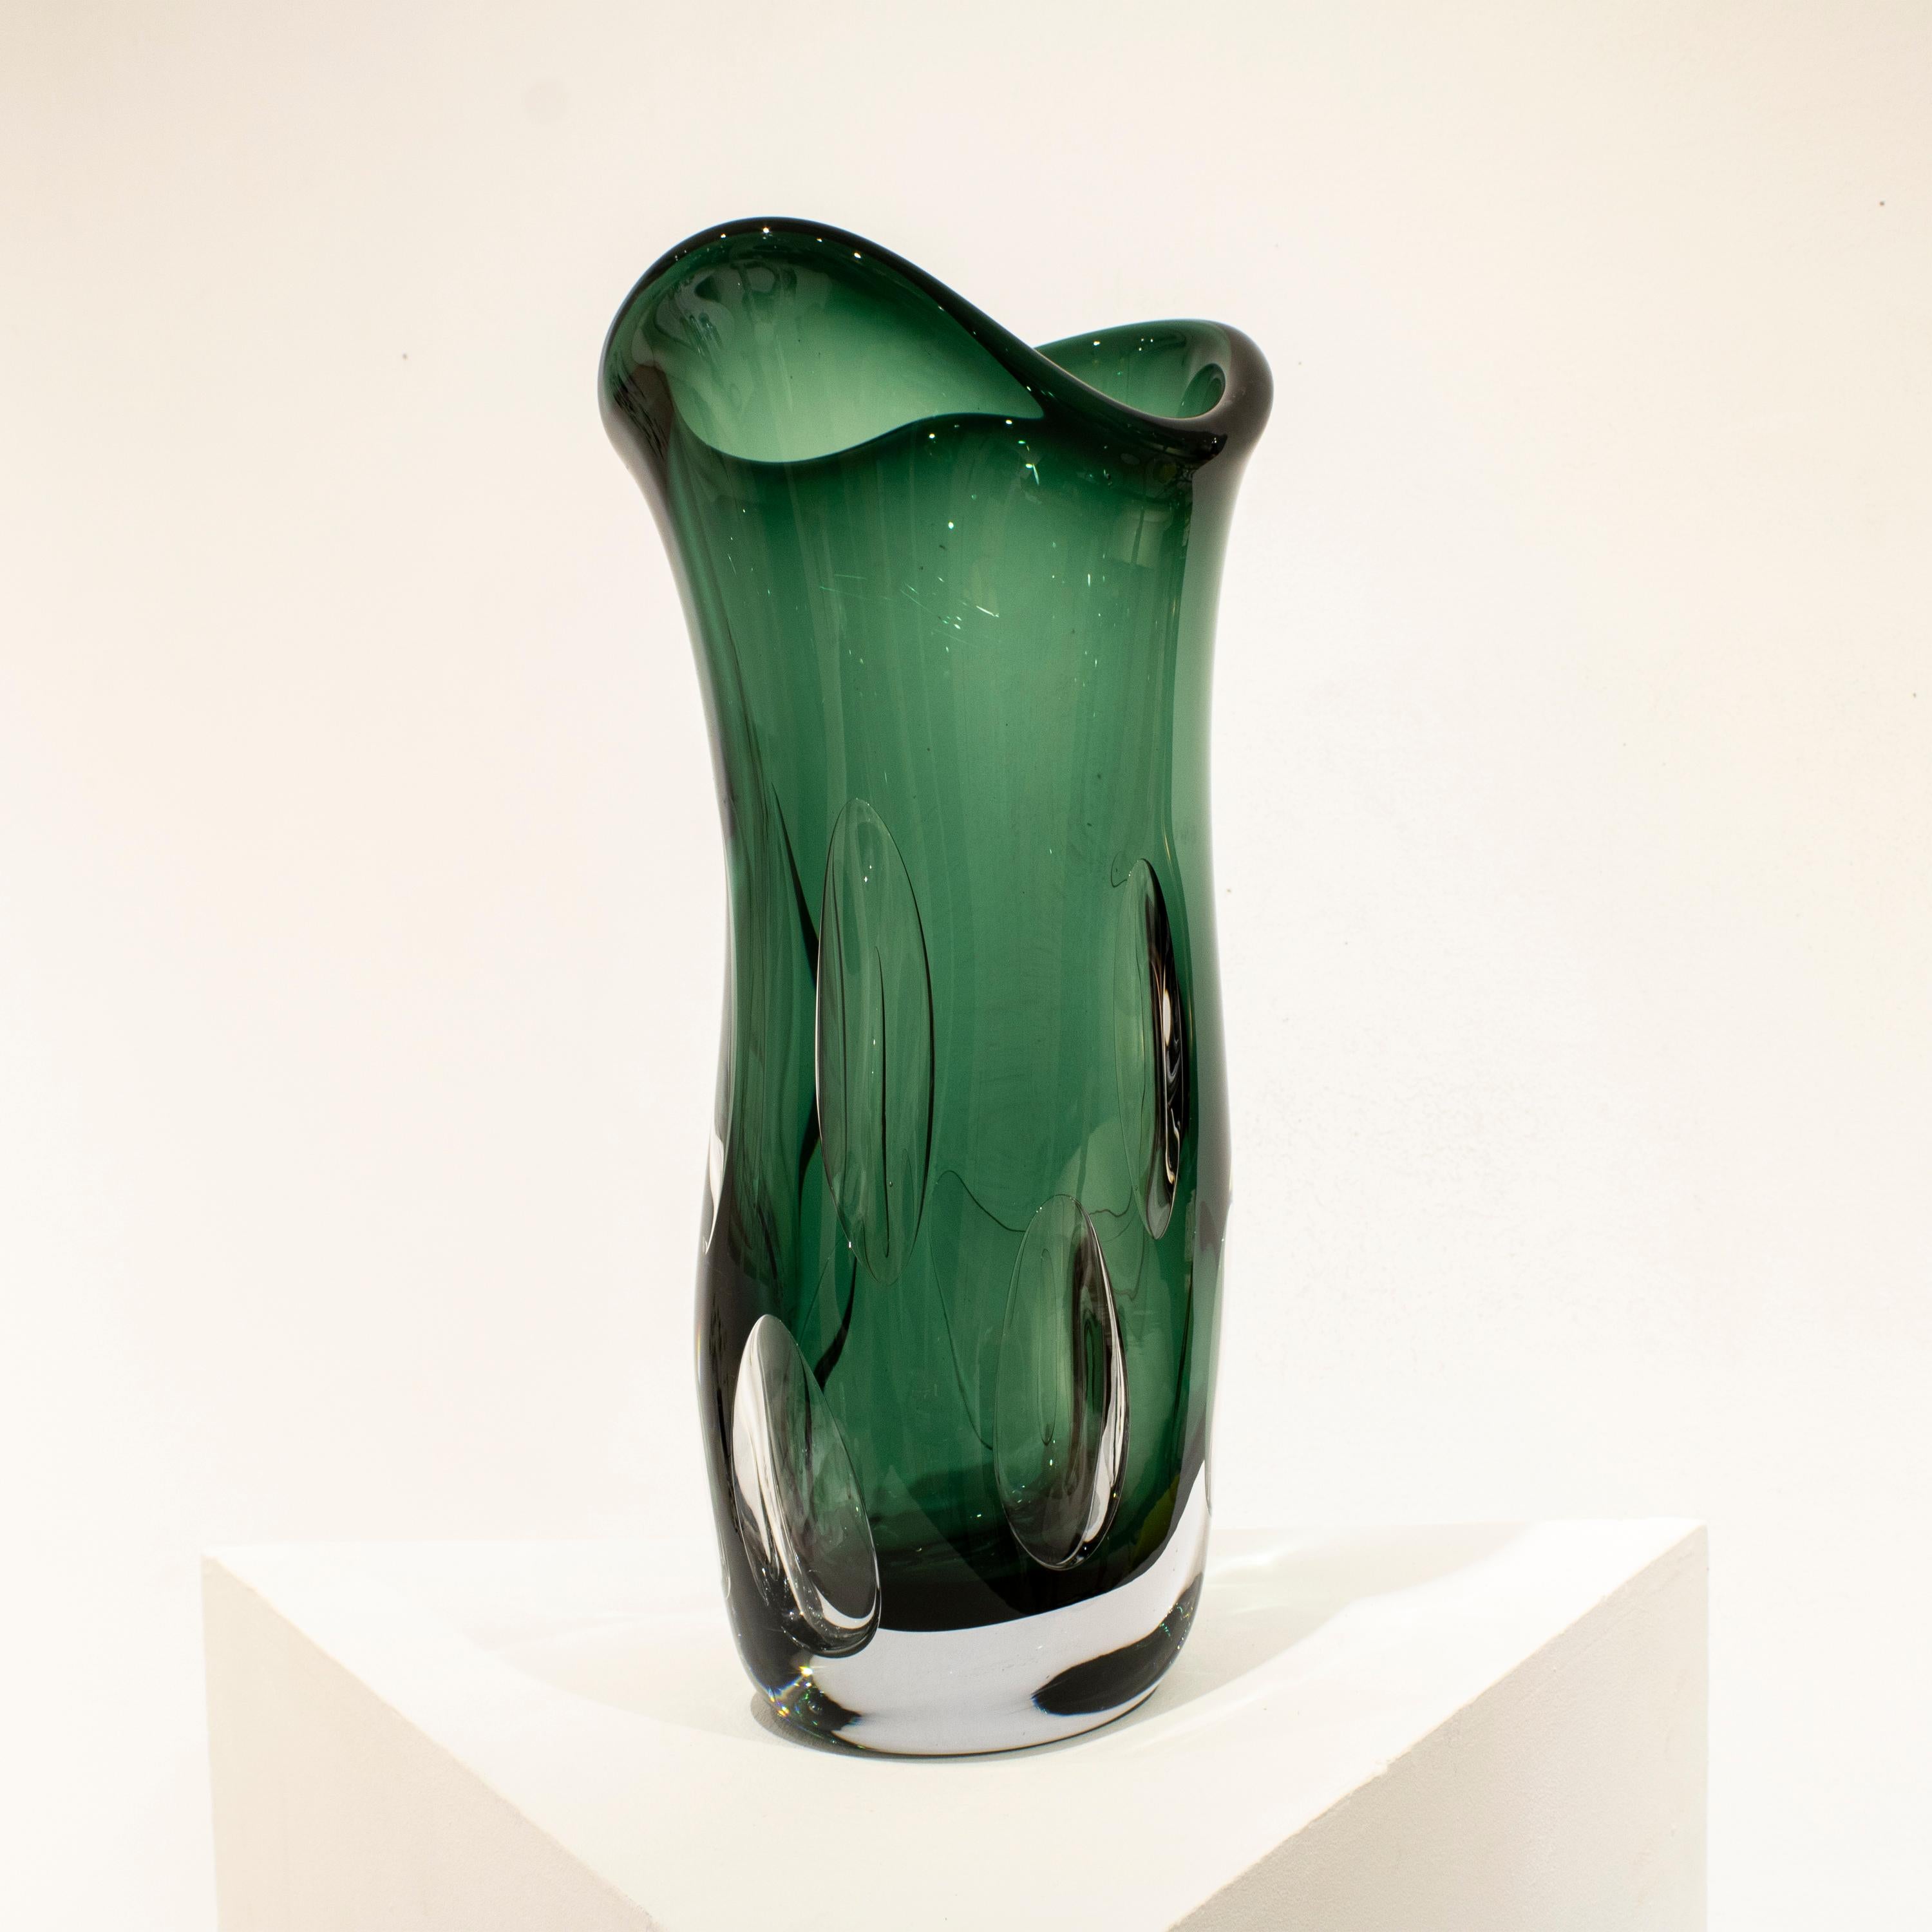 Vase en verre semi-transparent vert italien soufflé à la main avec des formes organiques et des bulles à l'intérieur.